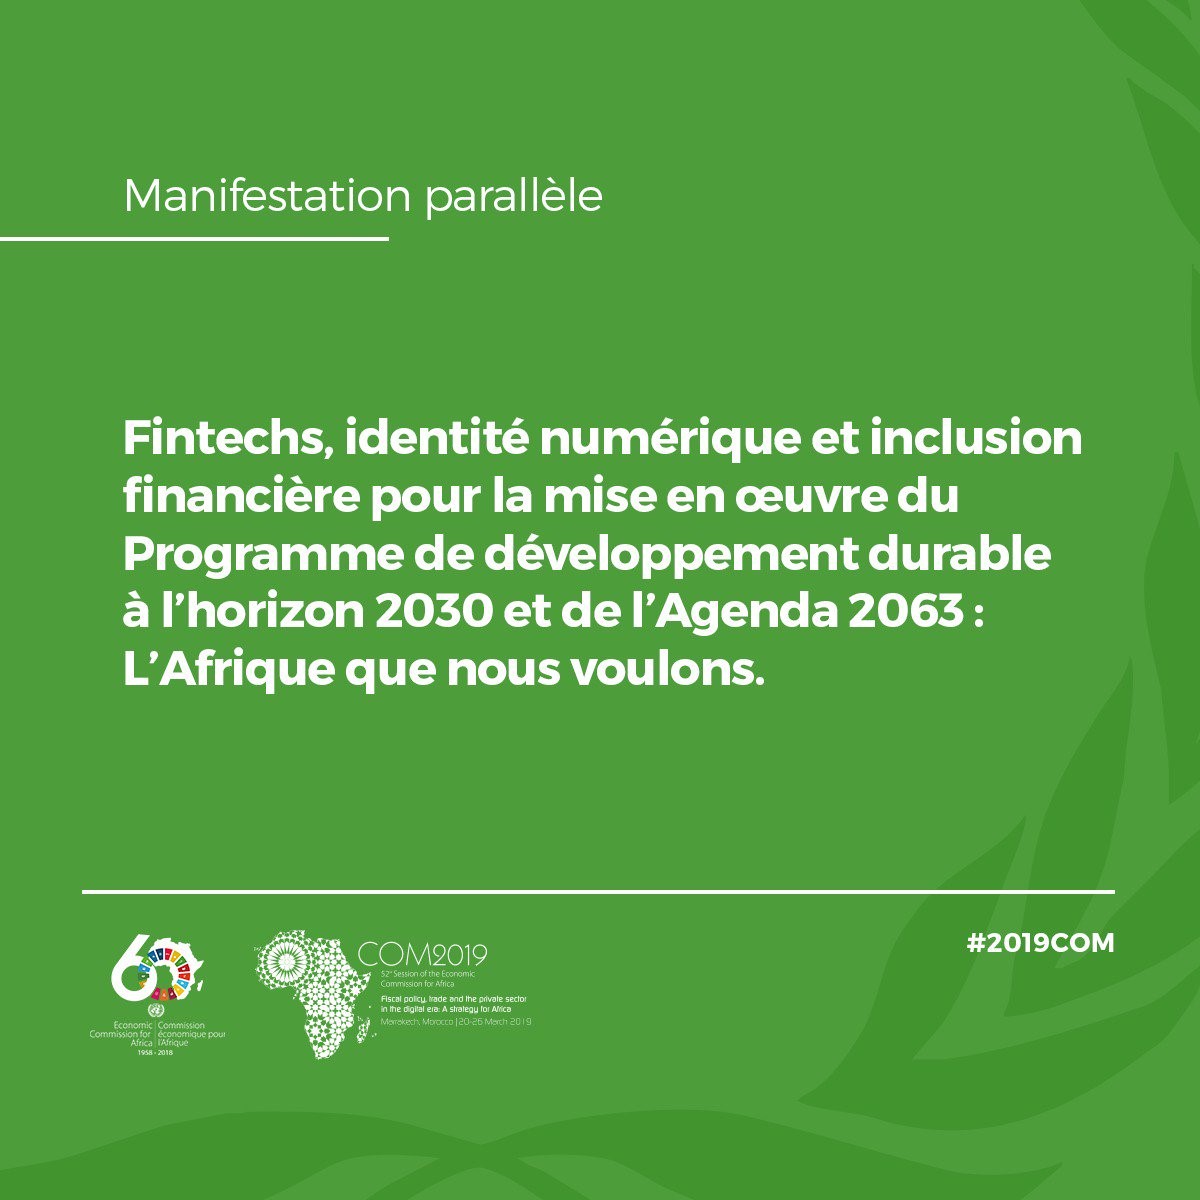 Participation au side-event portant sur « Fintechs, identification numérique et inclusion financière au service de la mise en œuvre du Programme de développement durable à l’horizon 2030 et de l’Agenda 2063 : L’Afrique que nous voulons »